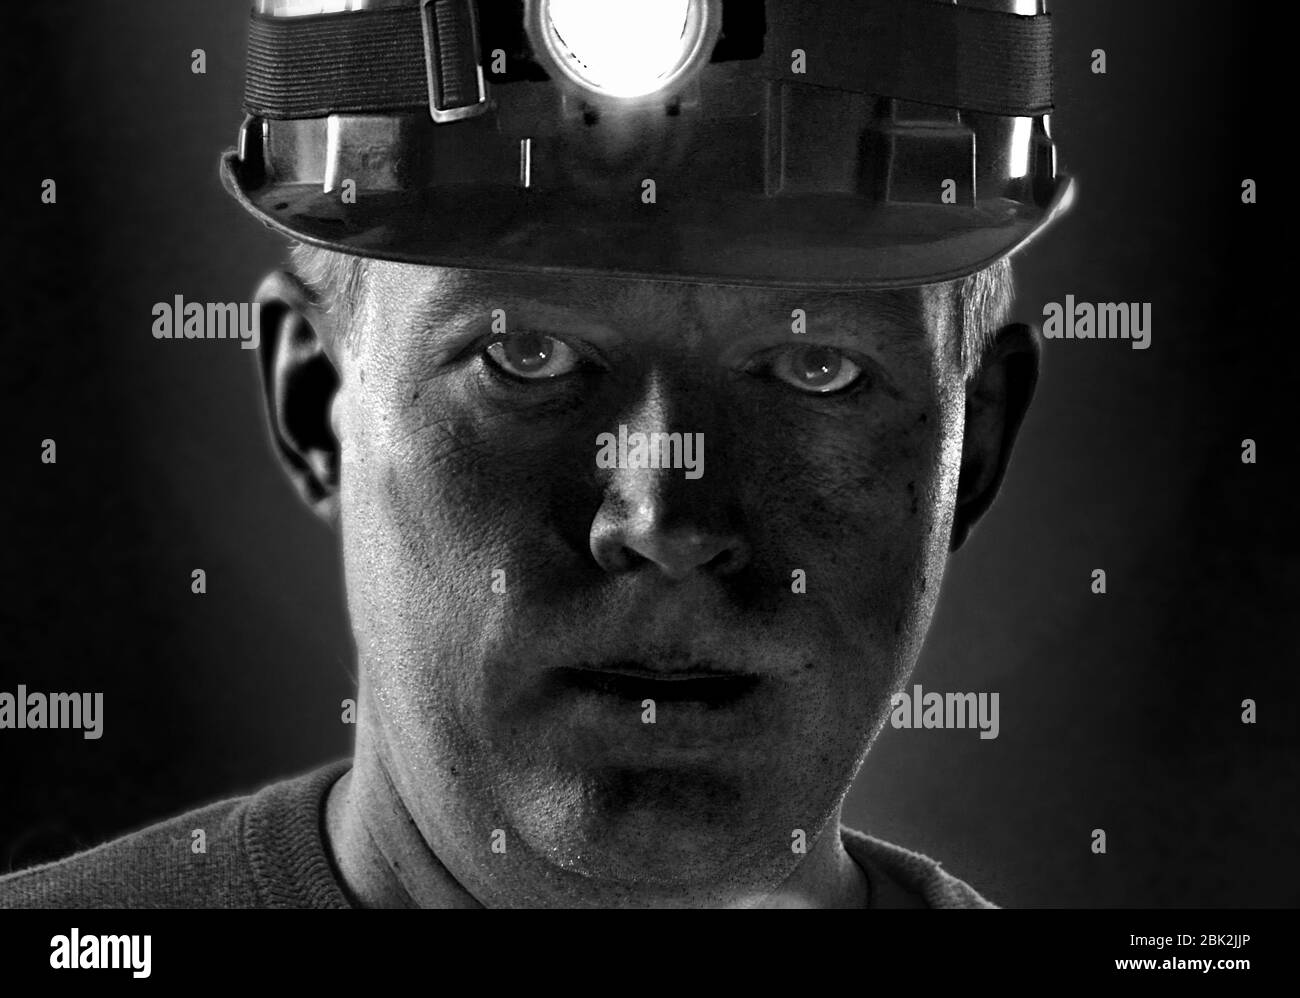 Face sale du mineur de charbon dans le casque avec lumière. Portrait du travailleur minier. Homme fatigué de travail dur. Banque D'Images